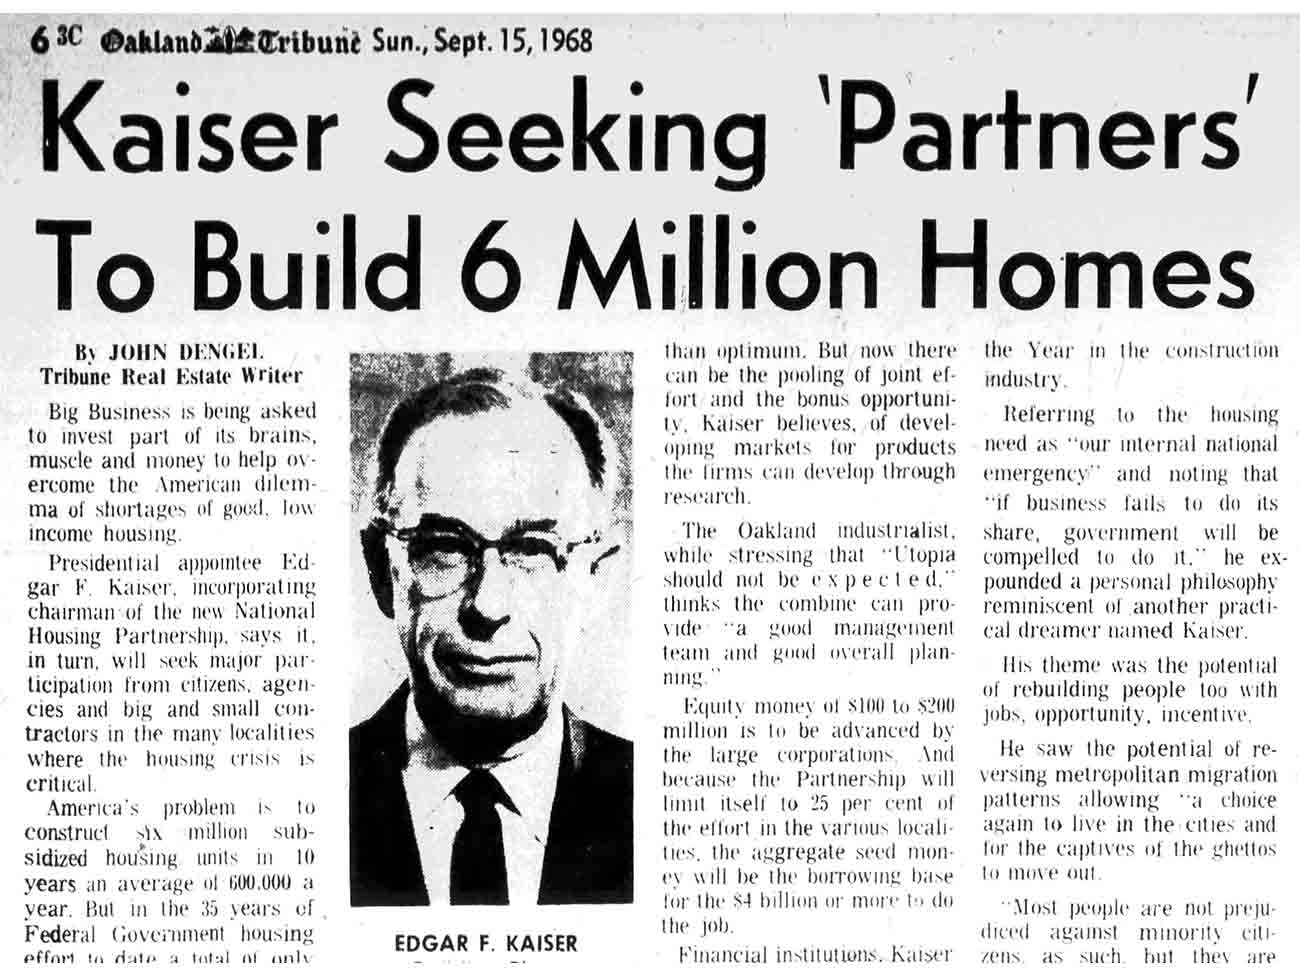 Newspaper article describing Edgar Kaiser’s plans for affordable housing, September 15, 1968.